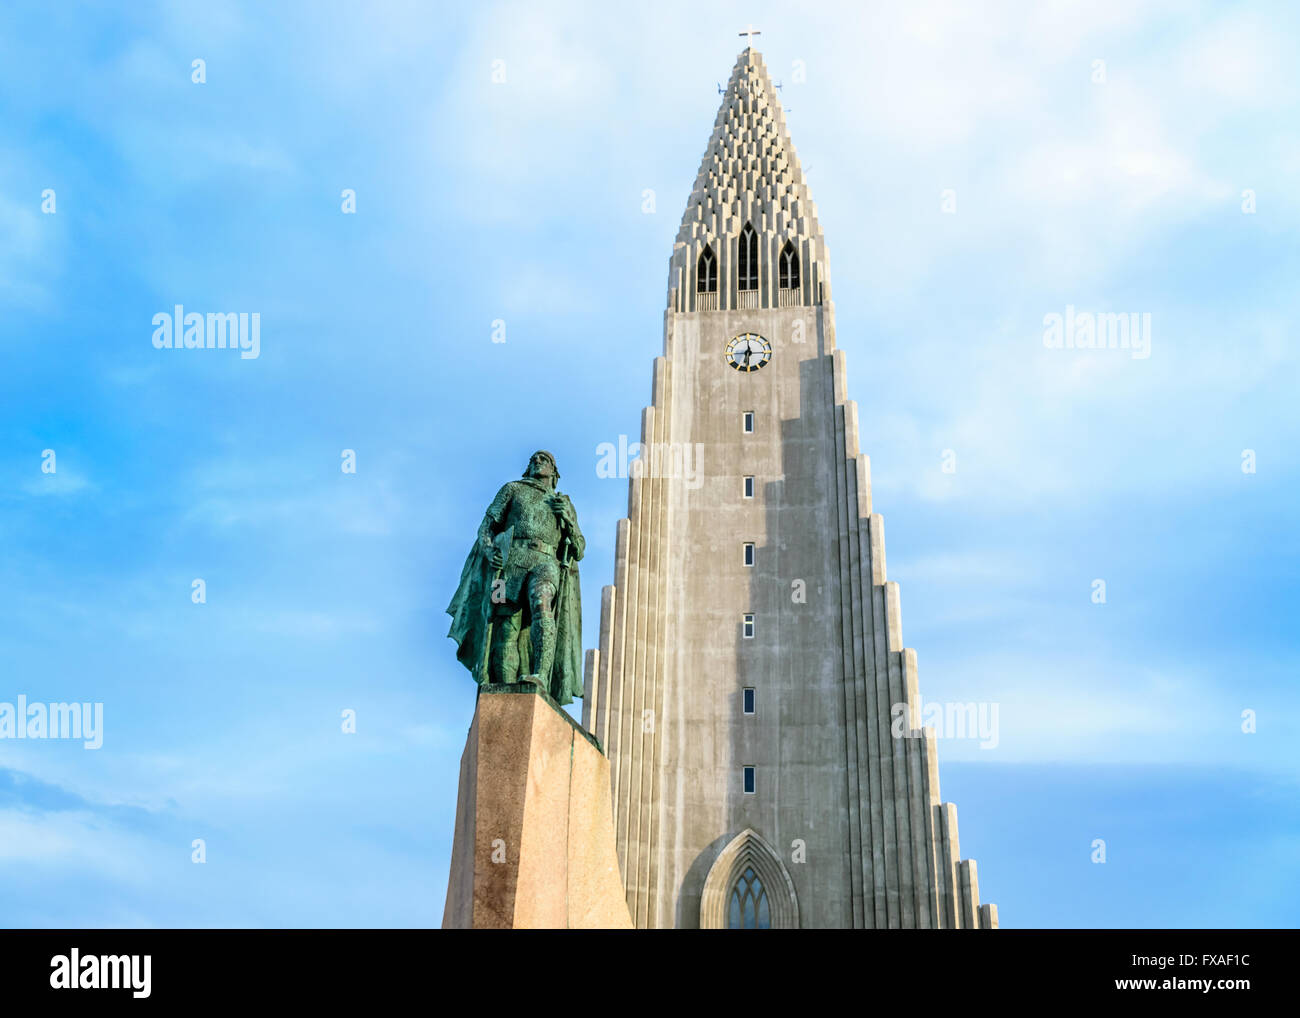 Statue de Leif Eriksson, Hallgrimskirkja en dehors de Reykjavik, Islande Banque D'Images